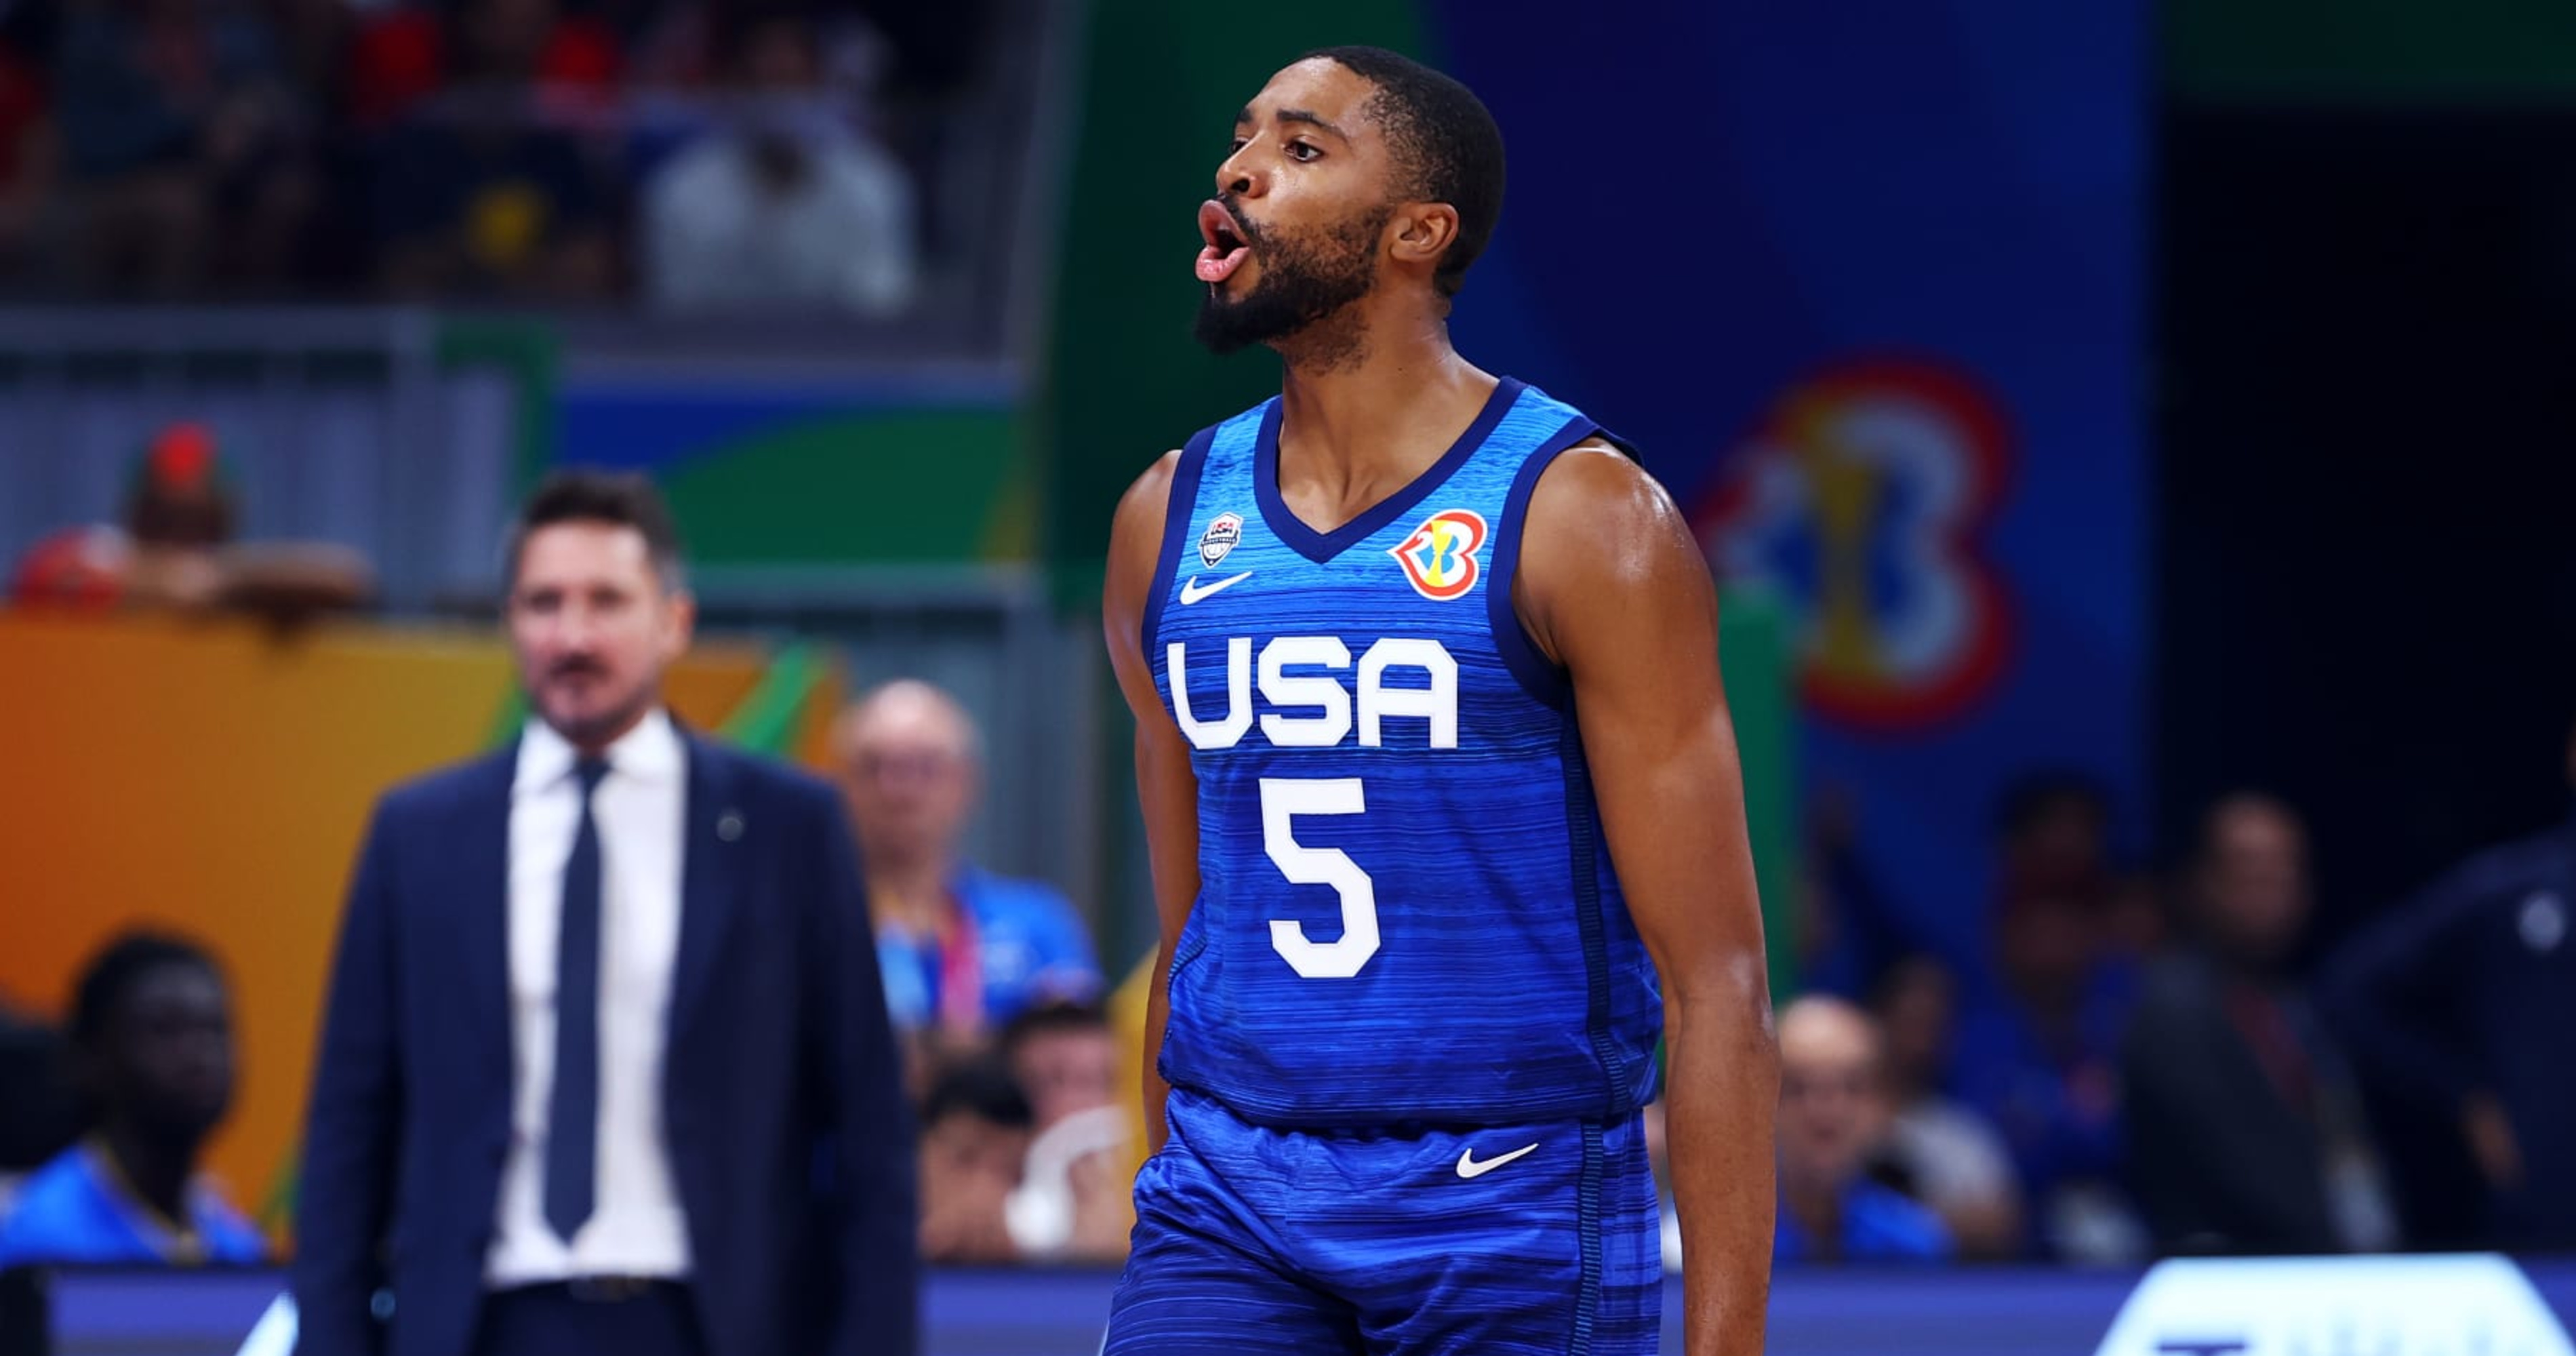 Hart to join Brunson, Bridges on Team USA's FIBA World Cup 2023